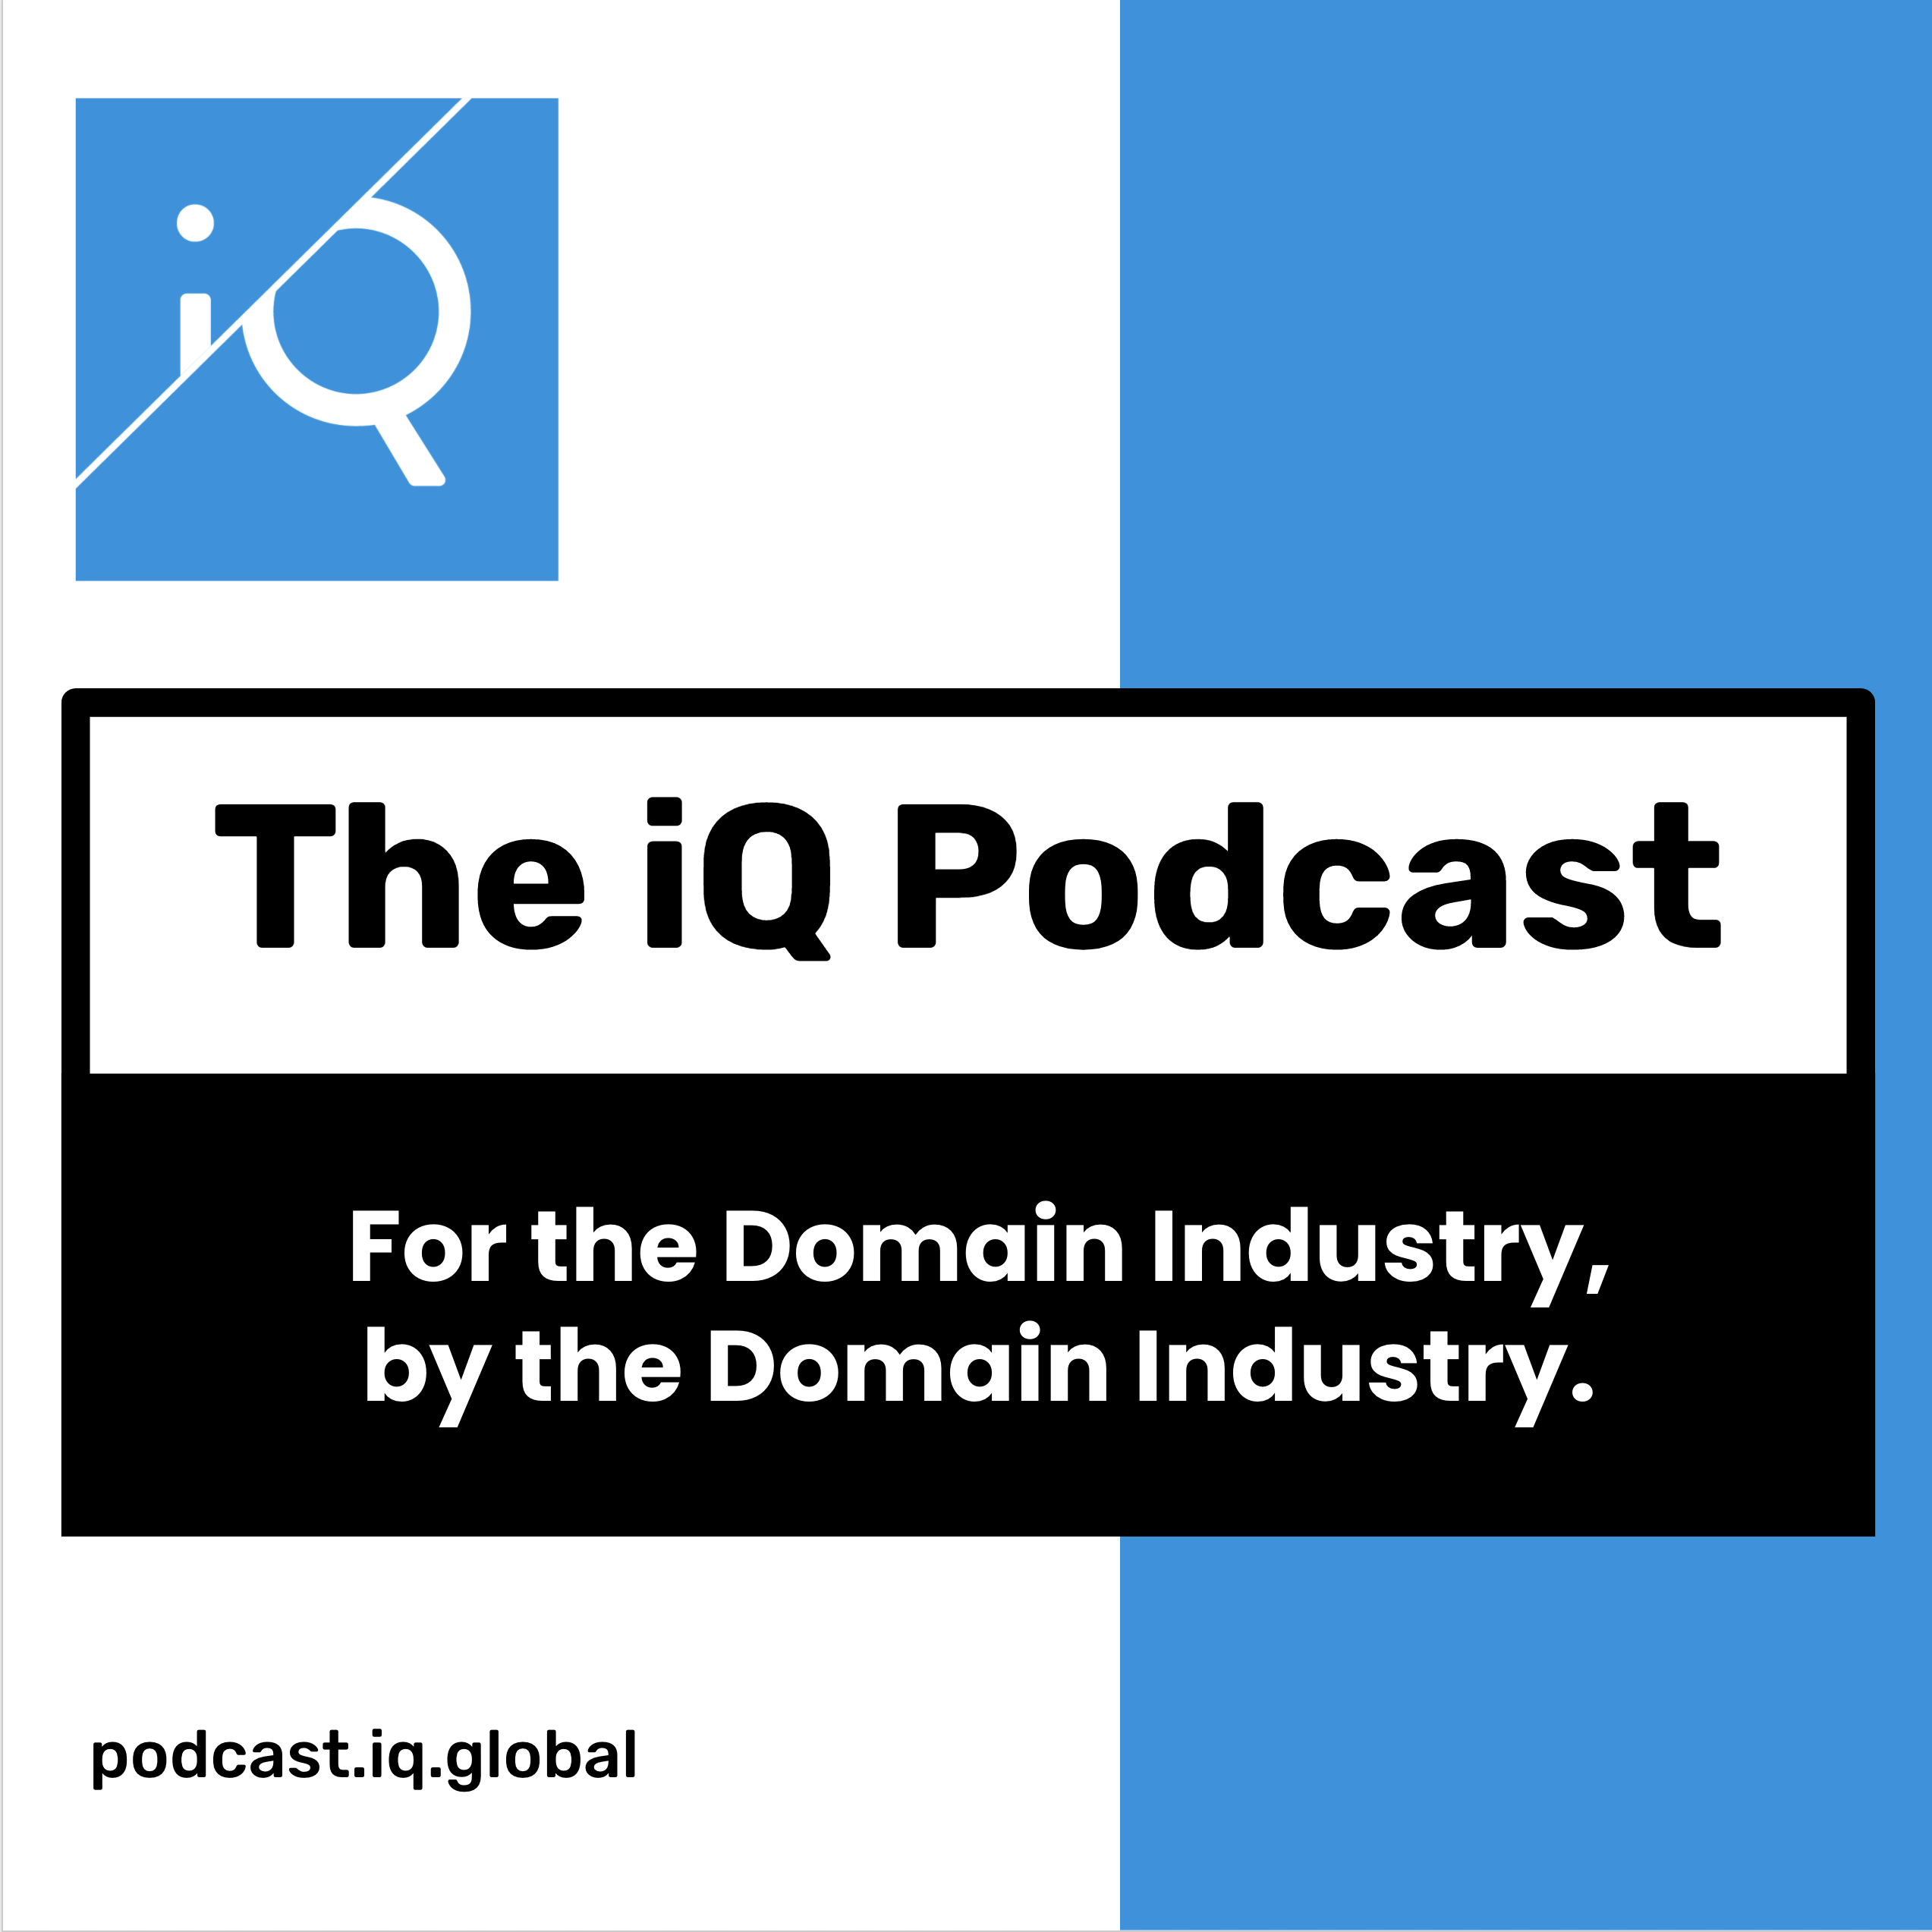 Artwork for podcast iQ Global Podcast